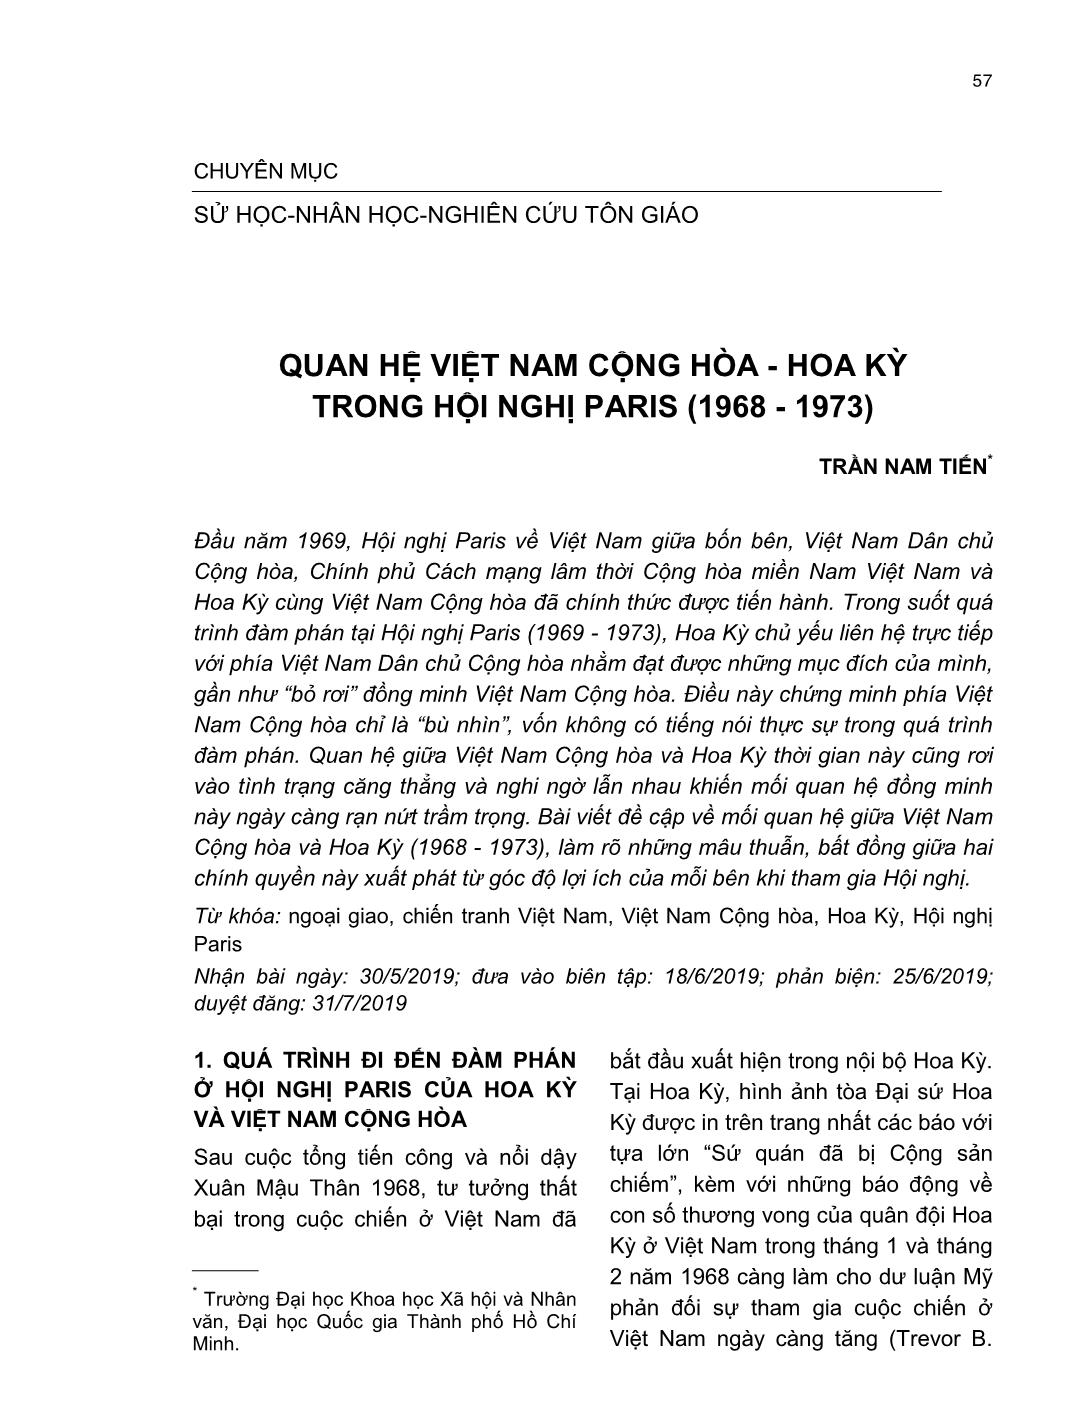 Quan hệ Việt Nam cộng hòa - Hoa Kỳ trong hội nghị Paris (1968 - 1973) trang 1